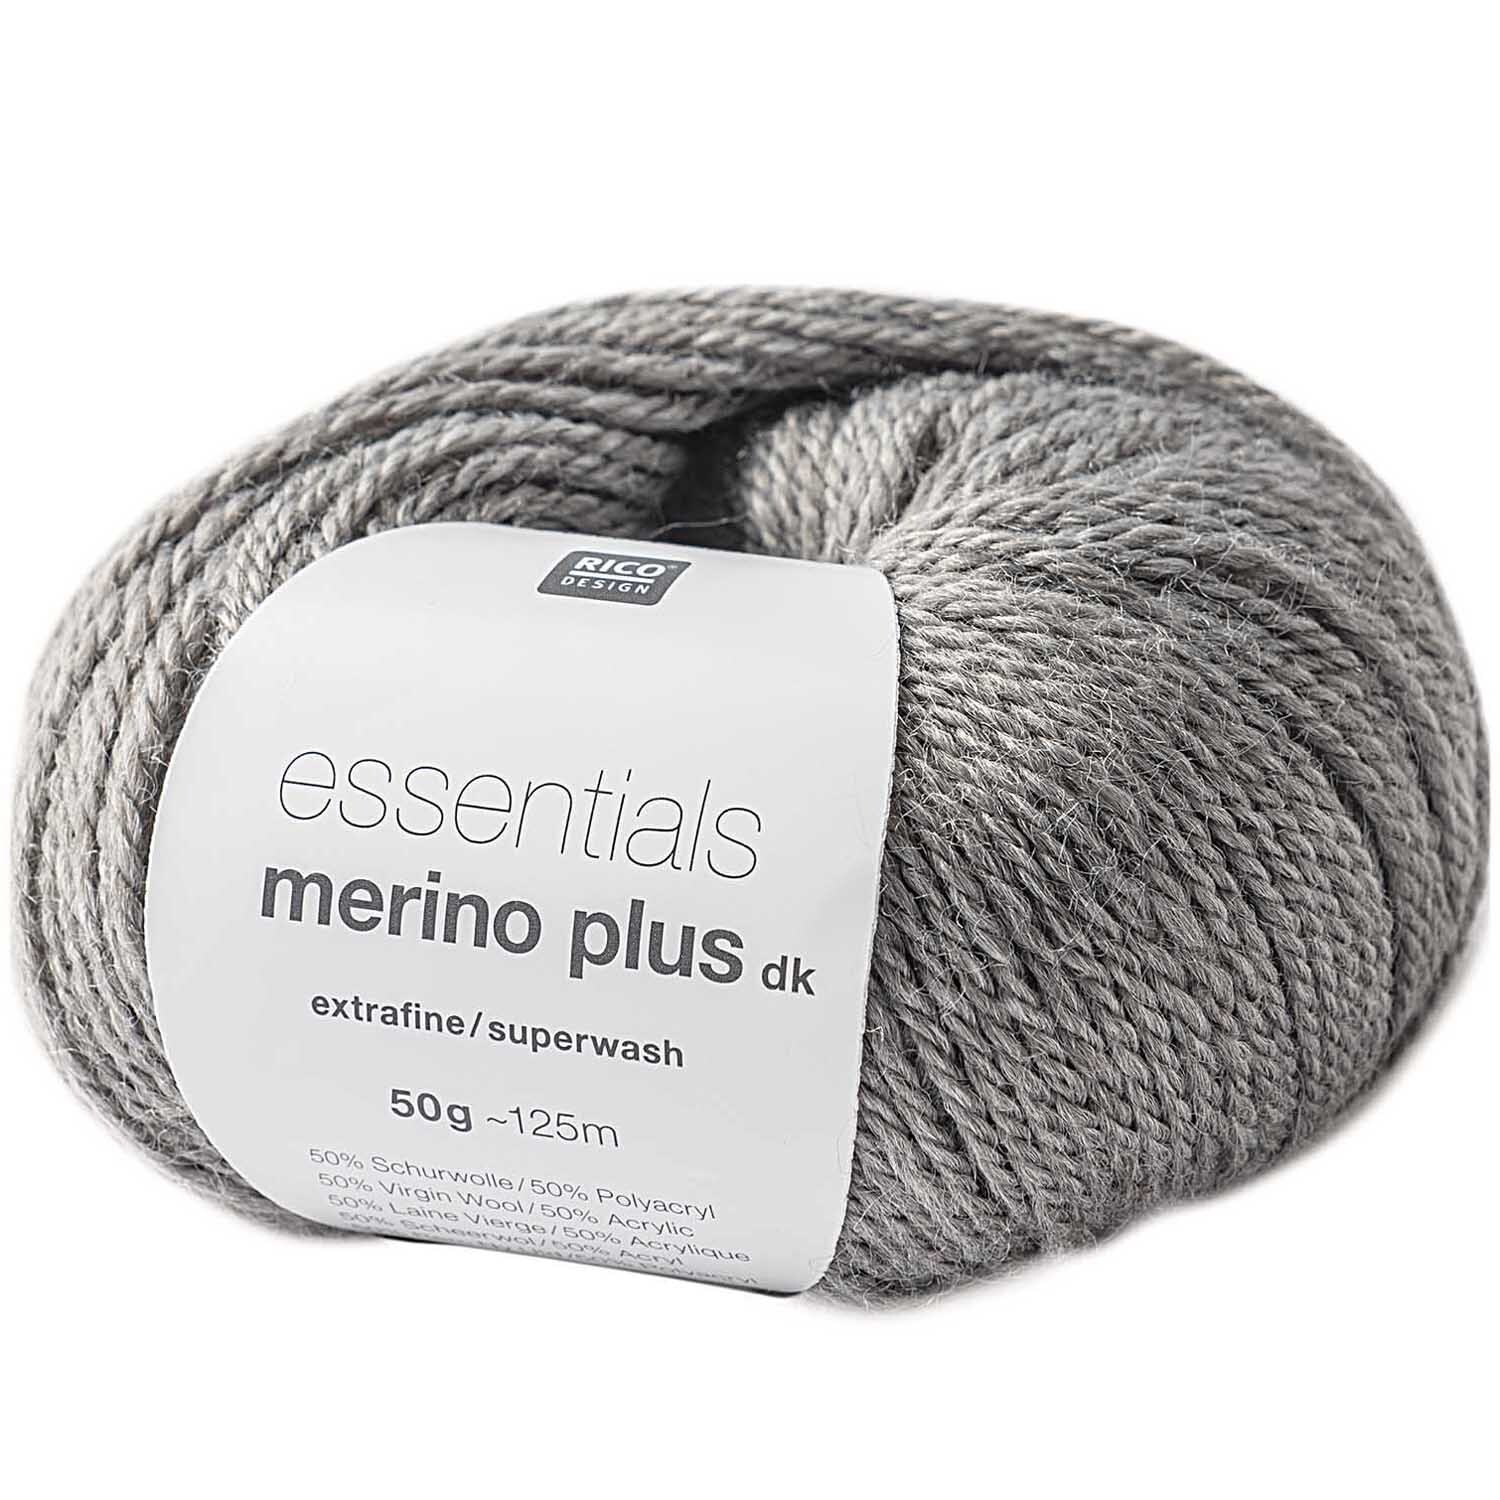 Essentials Merino Plus dk